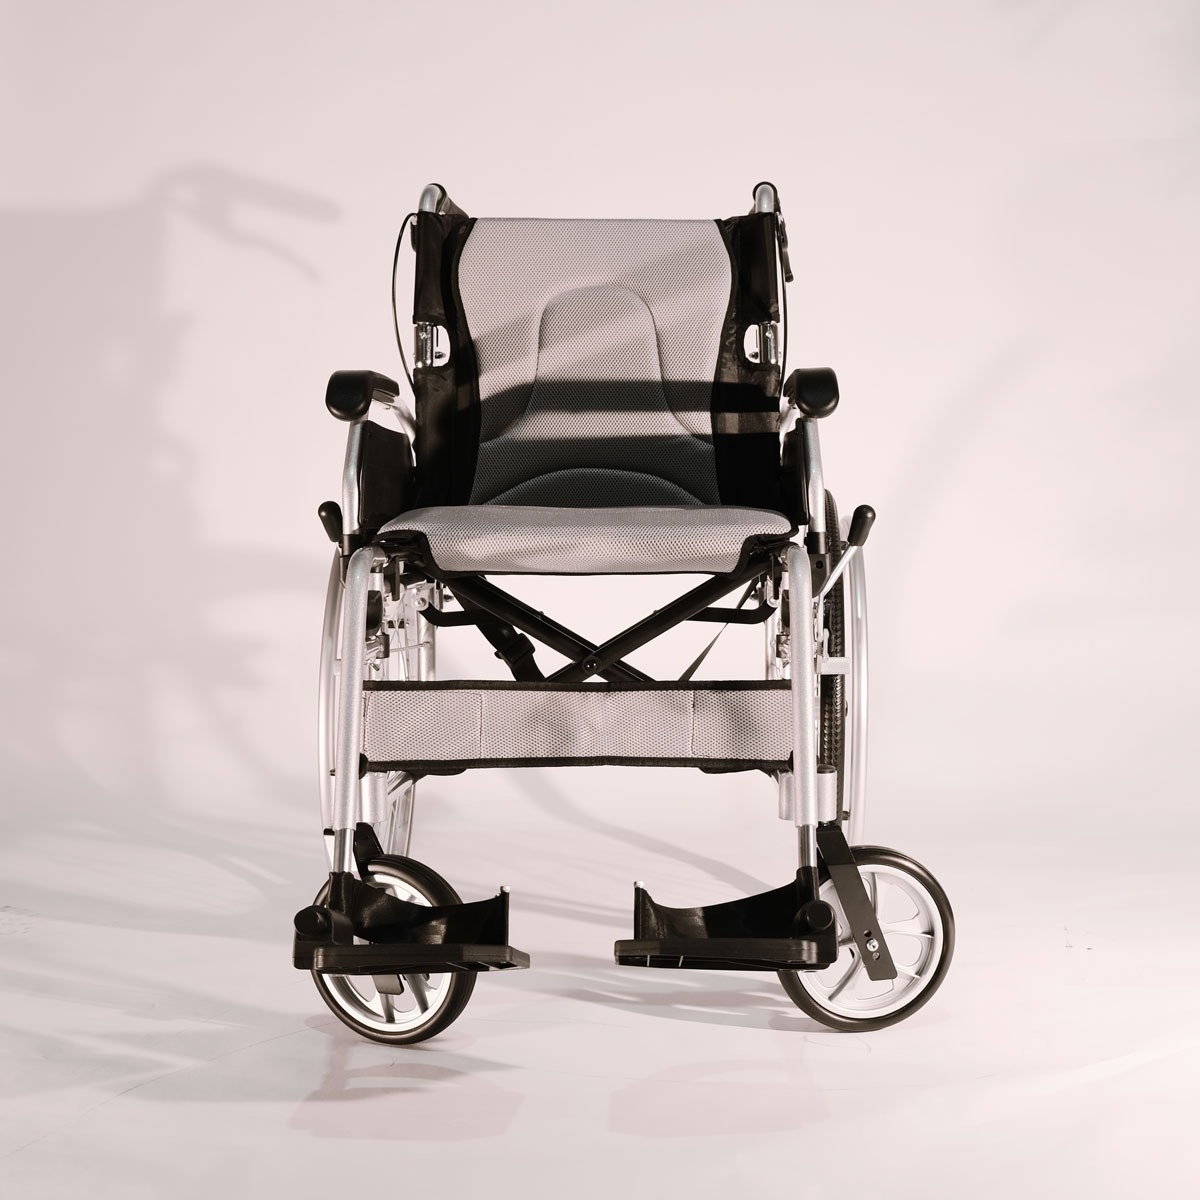 Daily Wheelchair